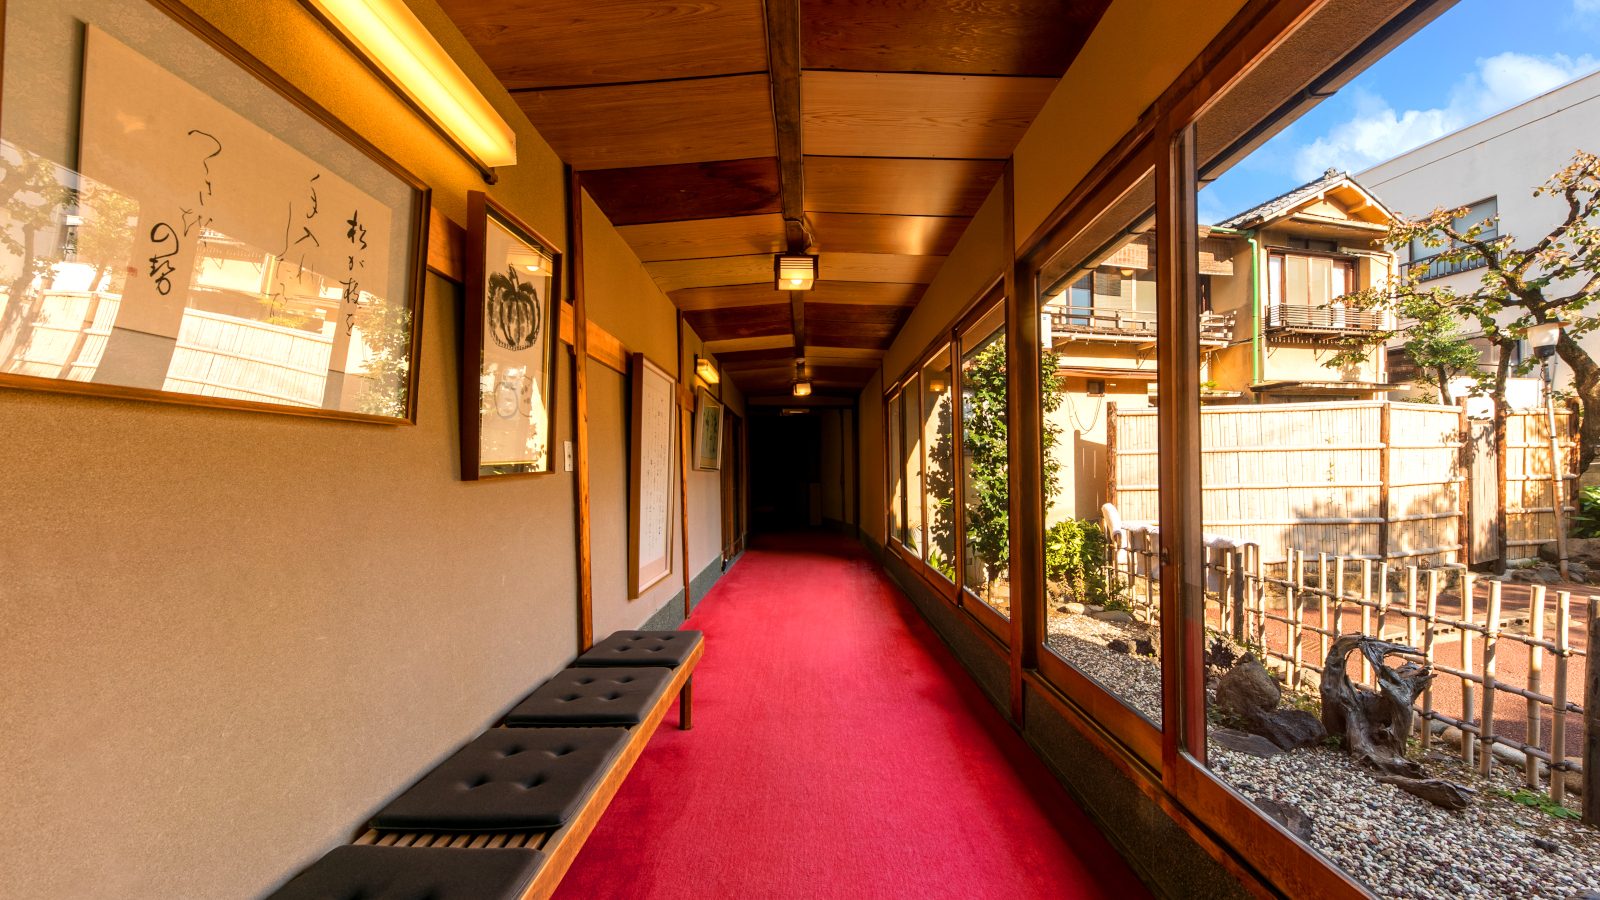 【玄関口】昭和7年創業の歴史を感じさせる、レッドカーペットを敷き詰めた昔ながら雰囲気が好評です。